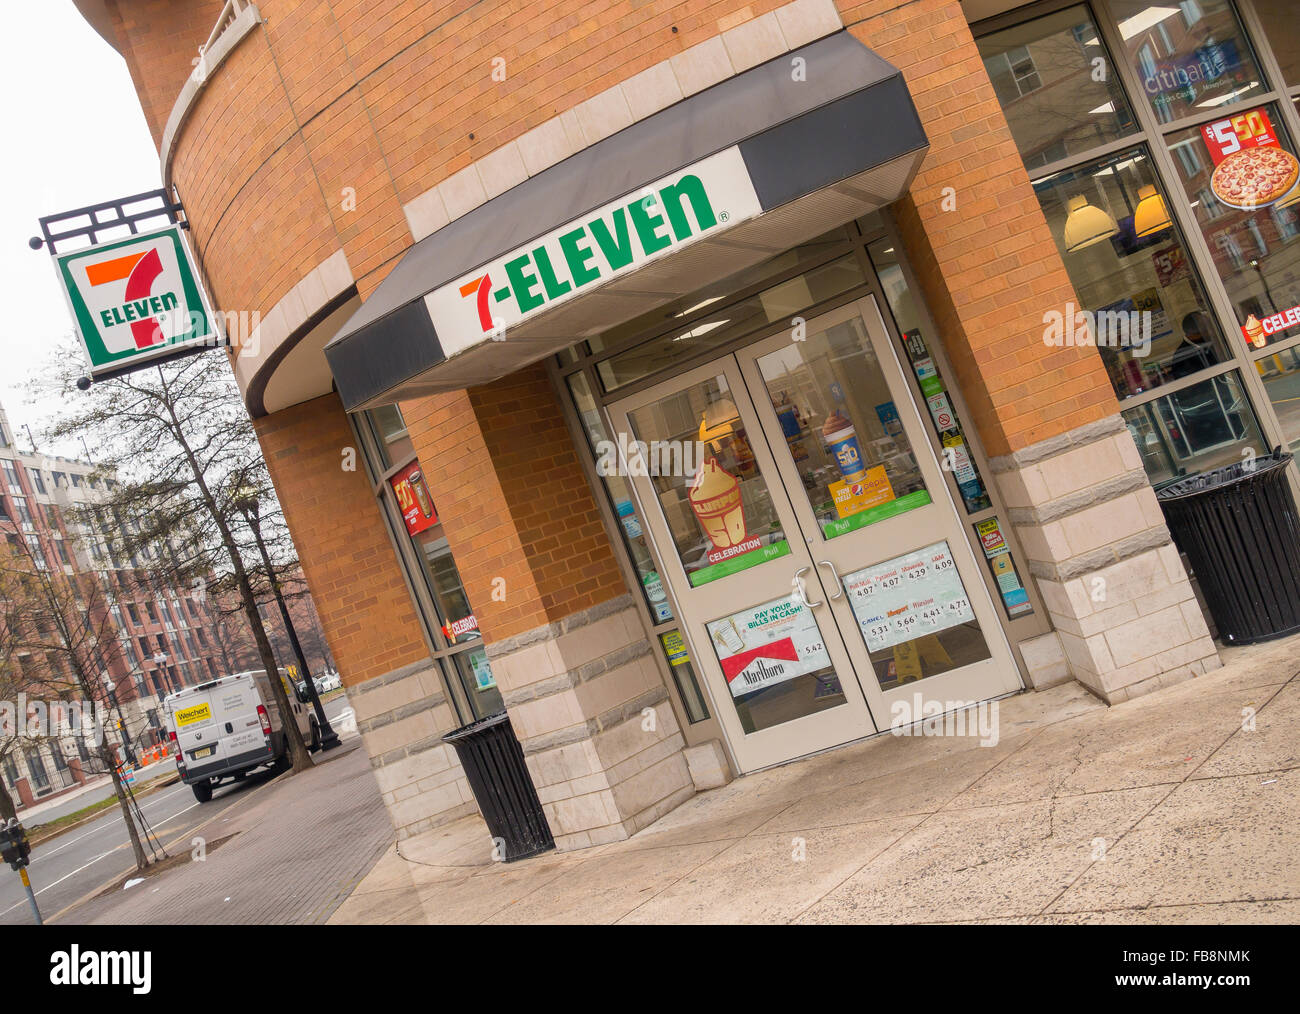 ARLINGTON, VIRGINIA, Stati Uniti d'America - 7-Eleven convenience store nel quartiere di Clarendon. Foto Stock